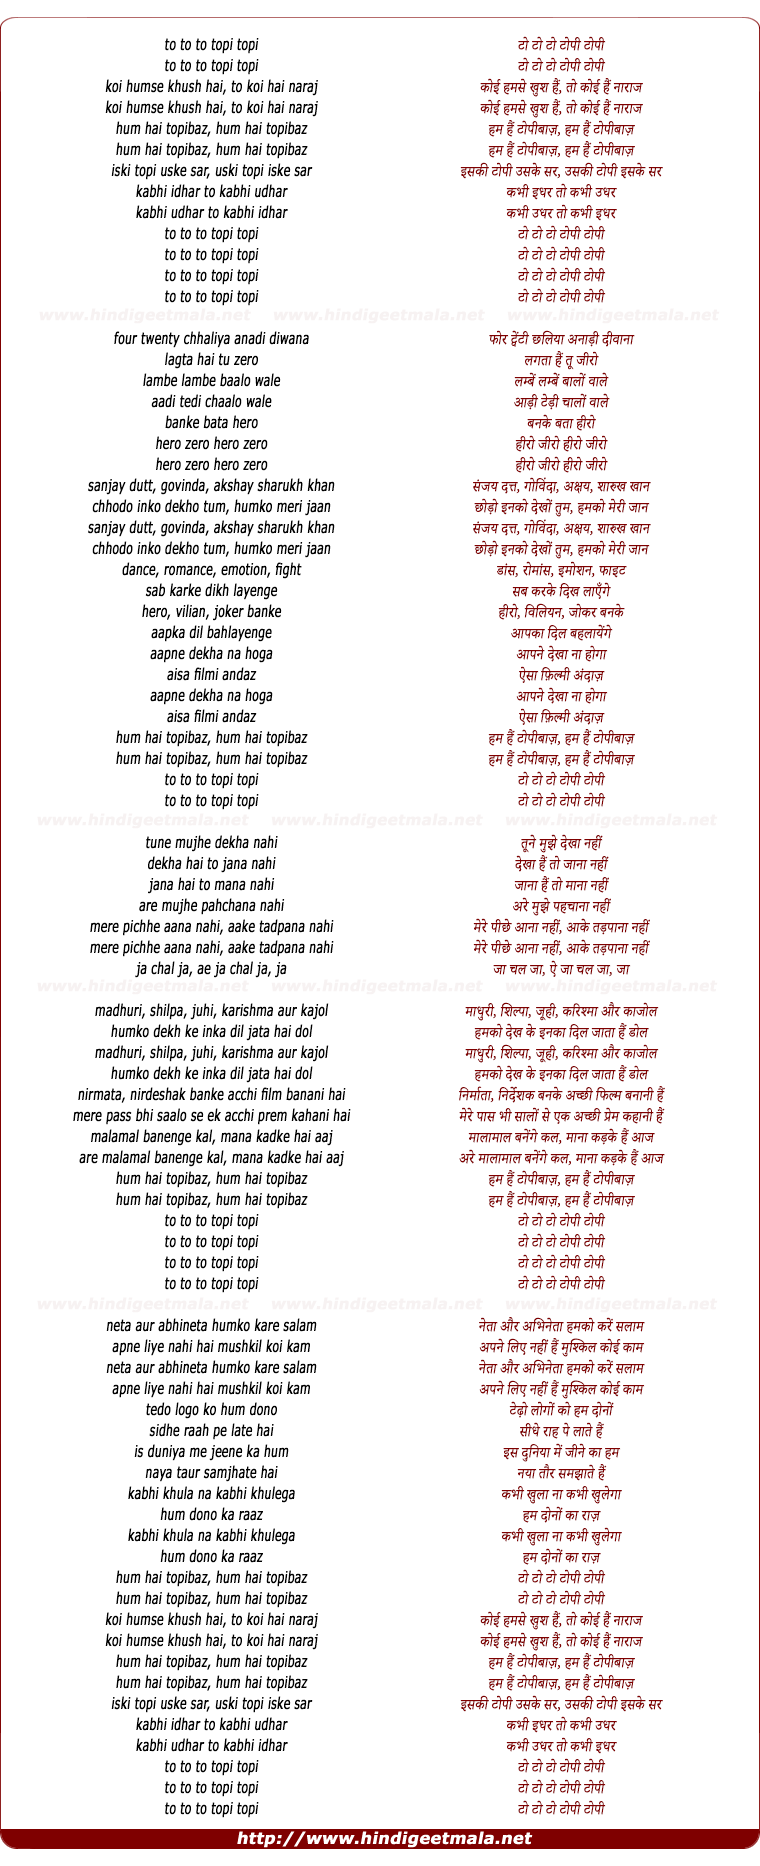 lyrics of song Koi Hamse Khush Hai To Koi Hai Naraj (Hum Hai Topi Baz)